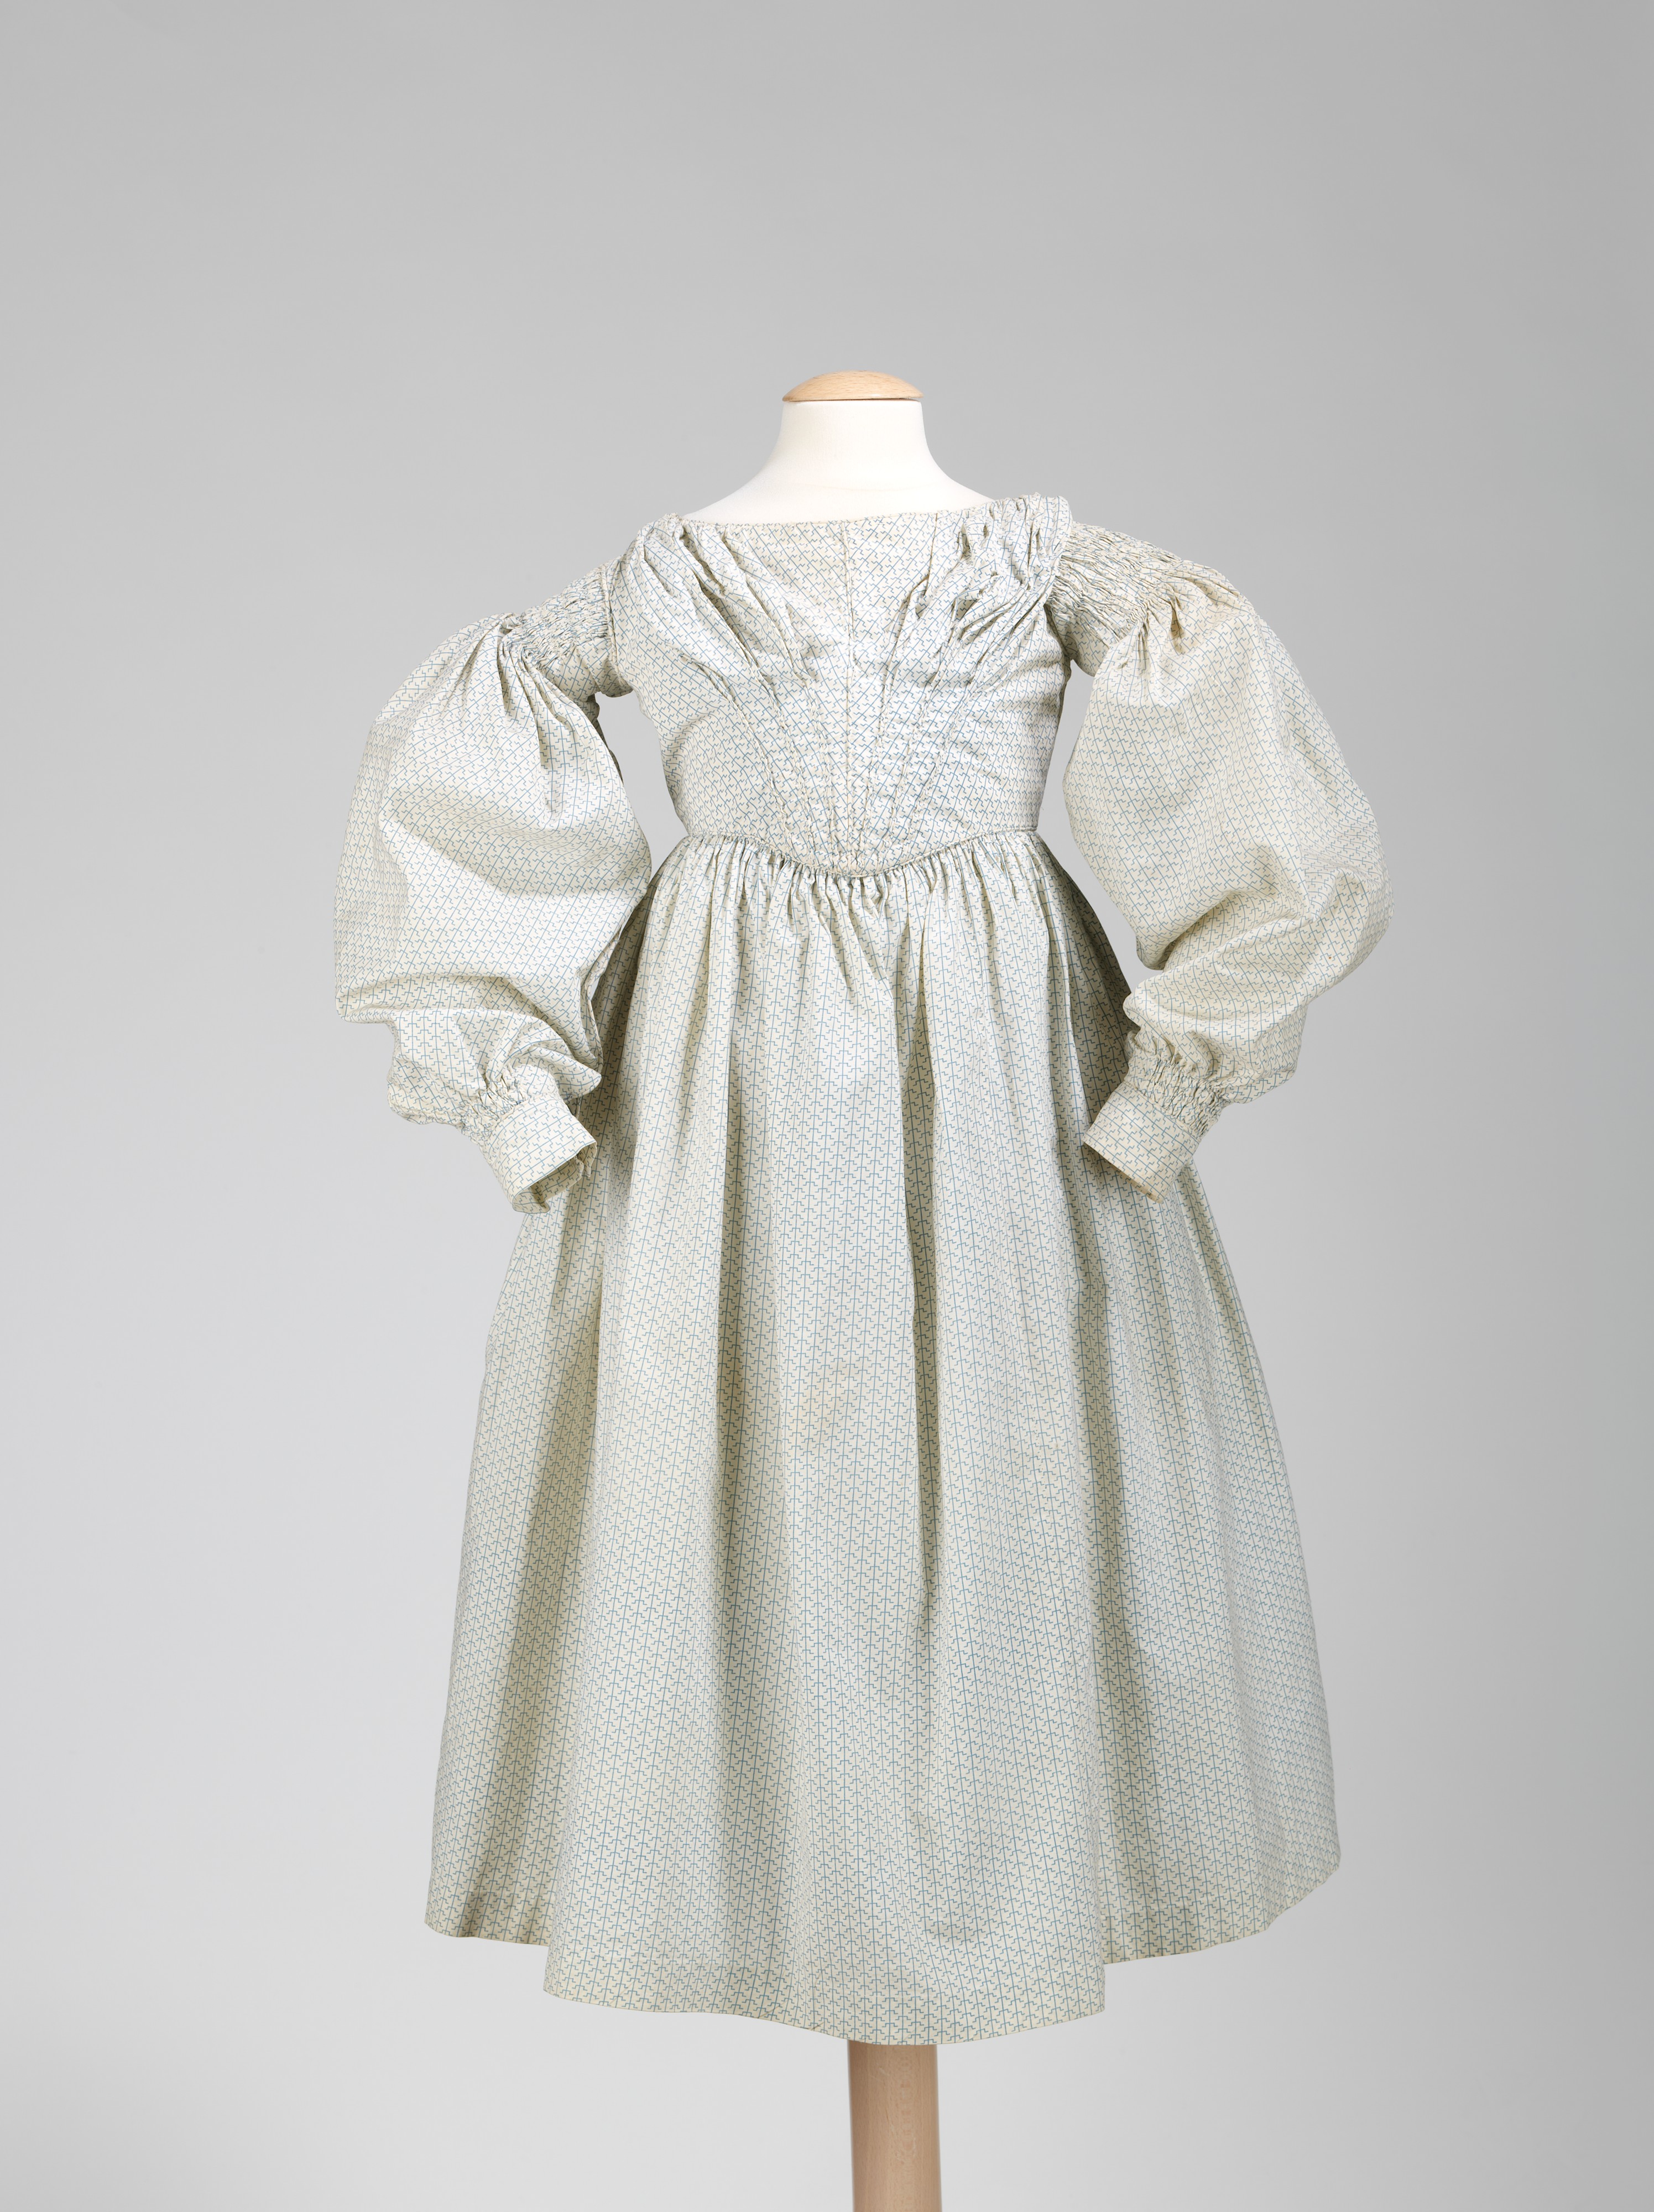 Платье с буфами на рукавах 19 век